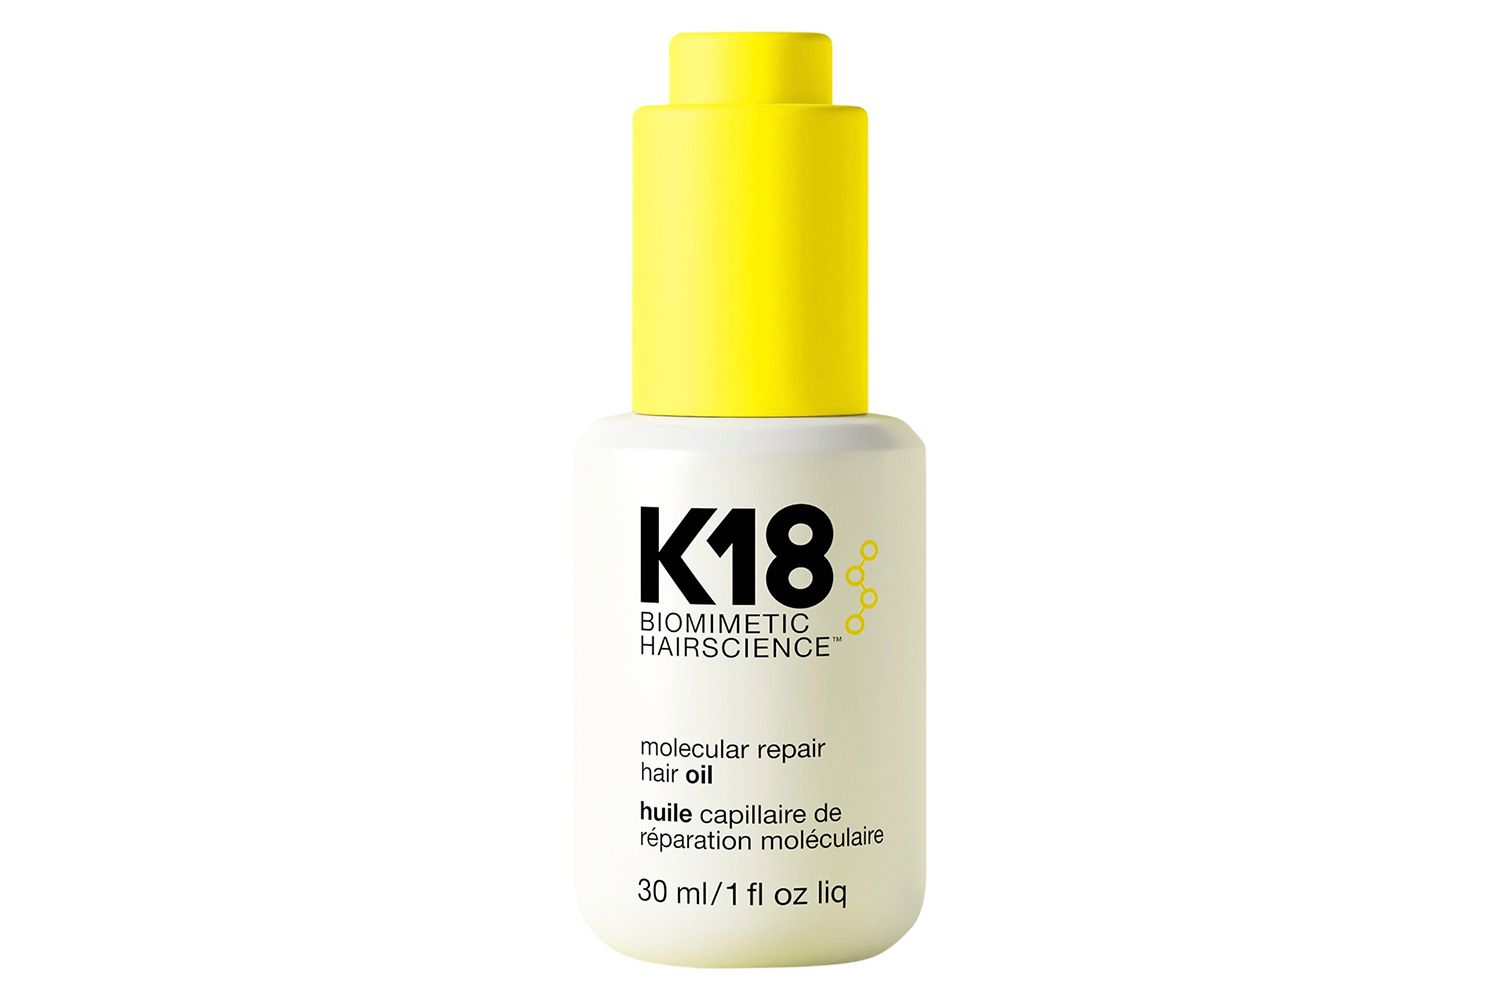 Sephora K18 Biomimetic Hairscience Molecular Repair Hair Oil